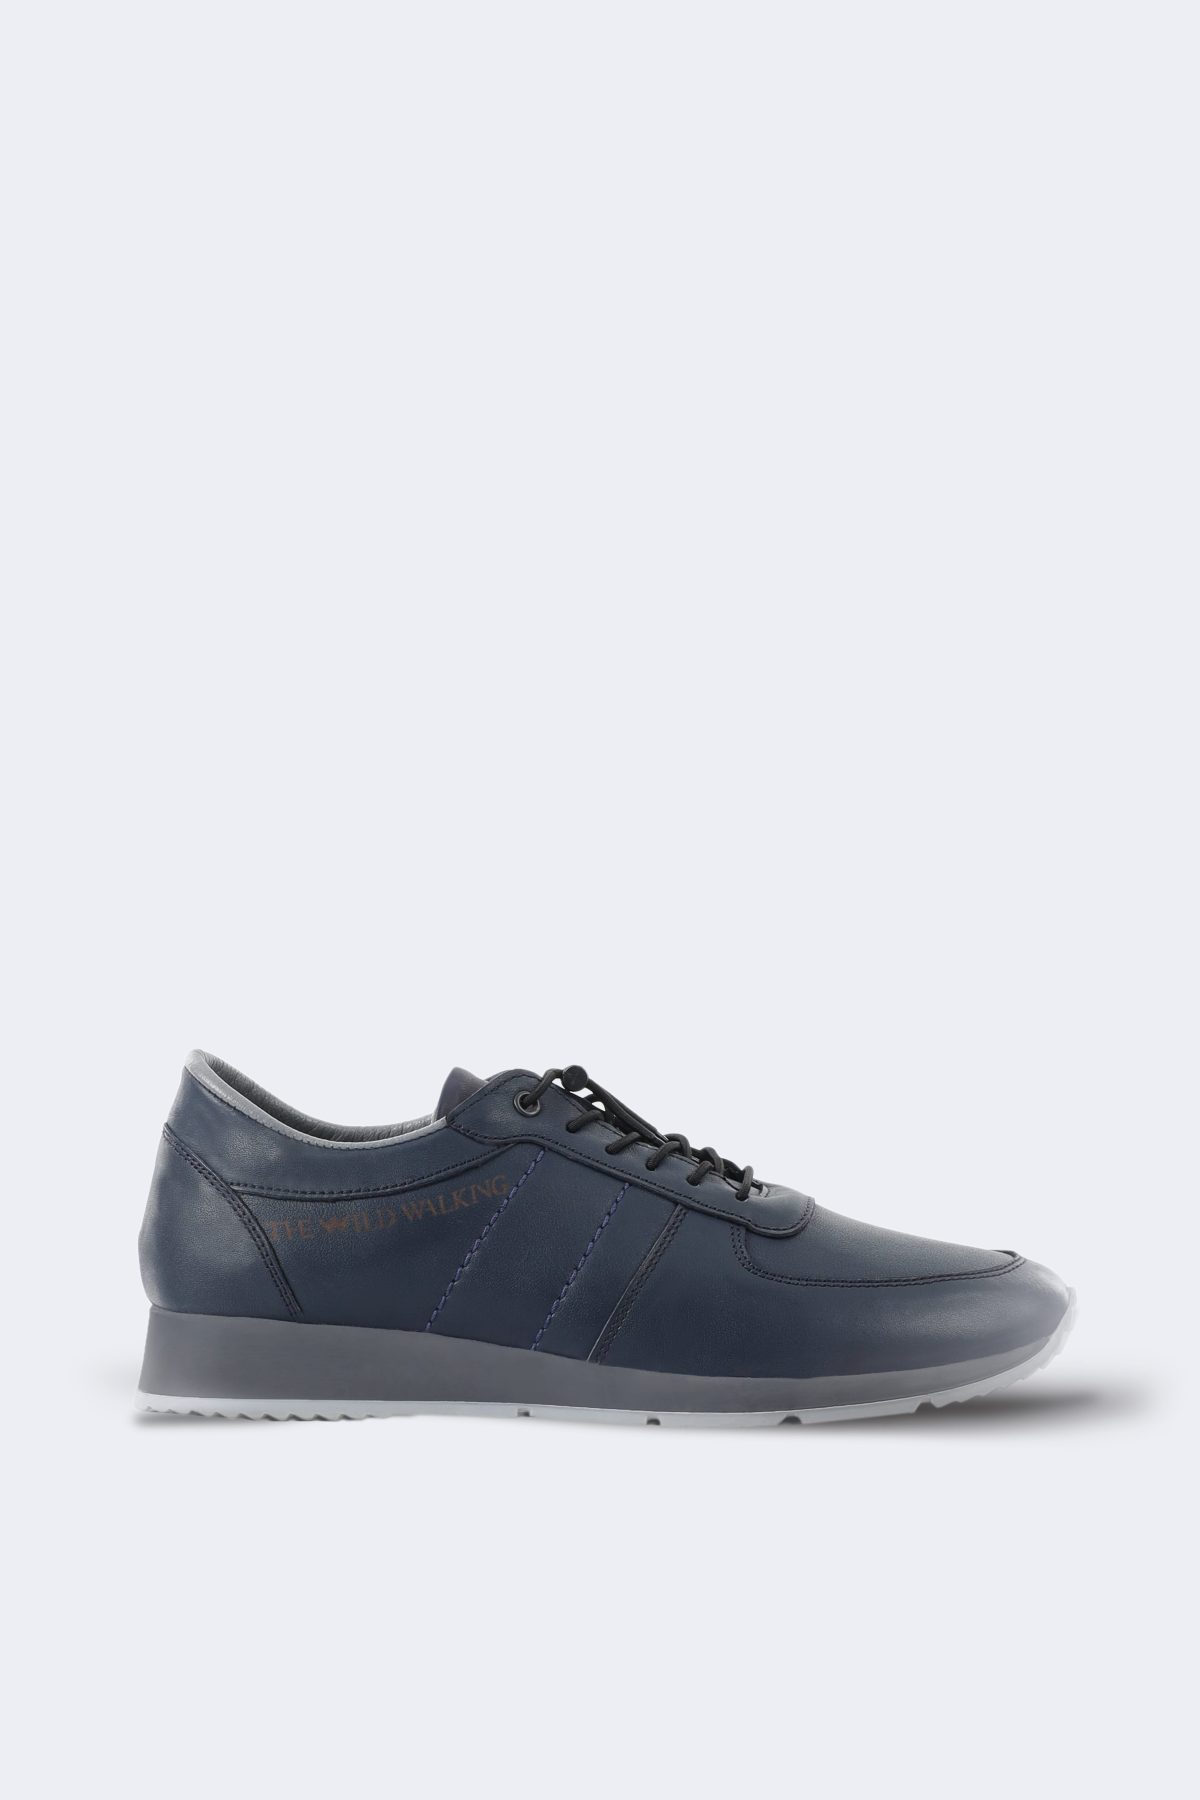 Thewildwalking leather sneakers – Navy blue-0